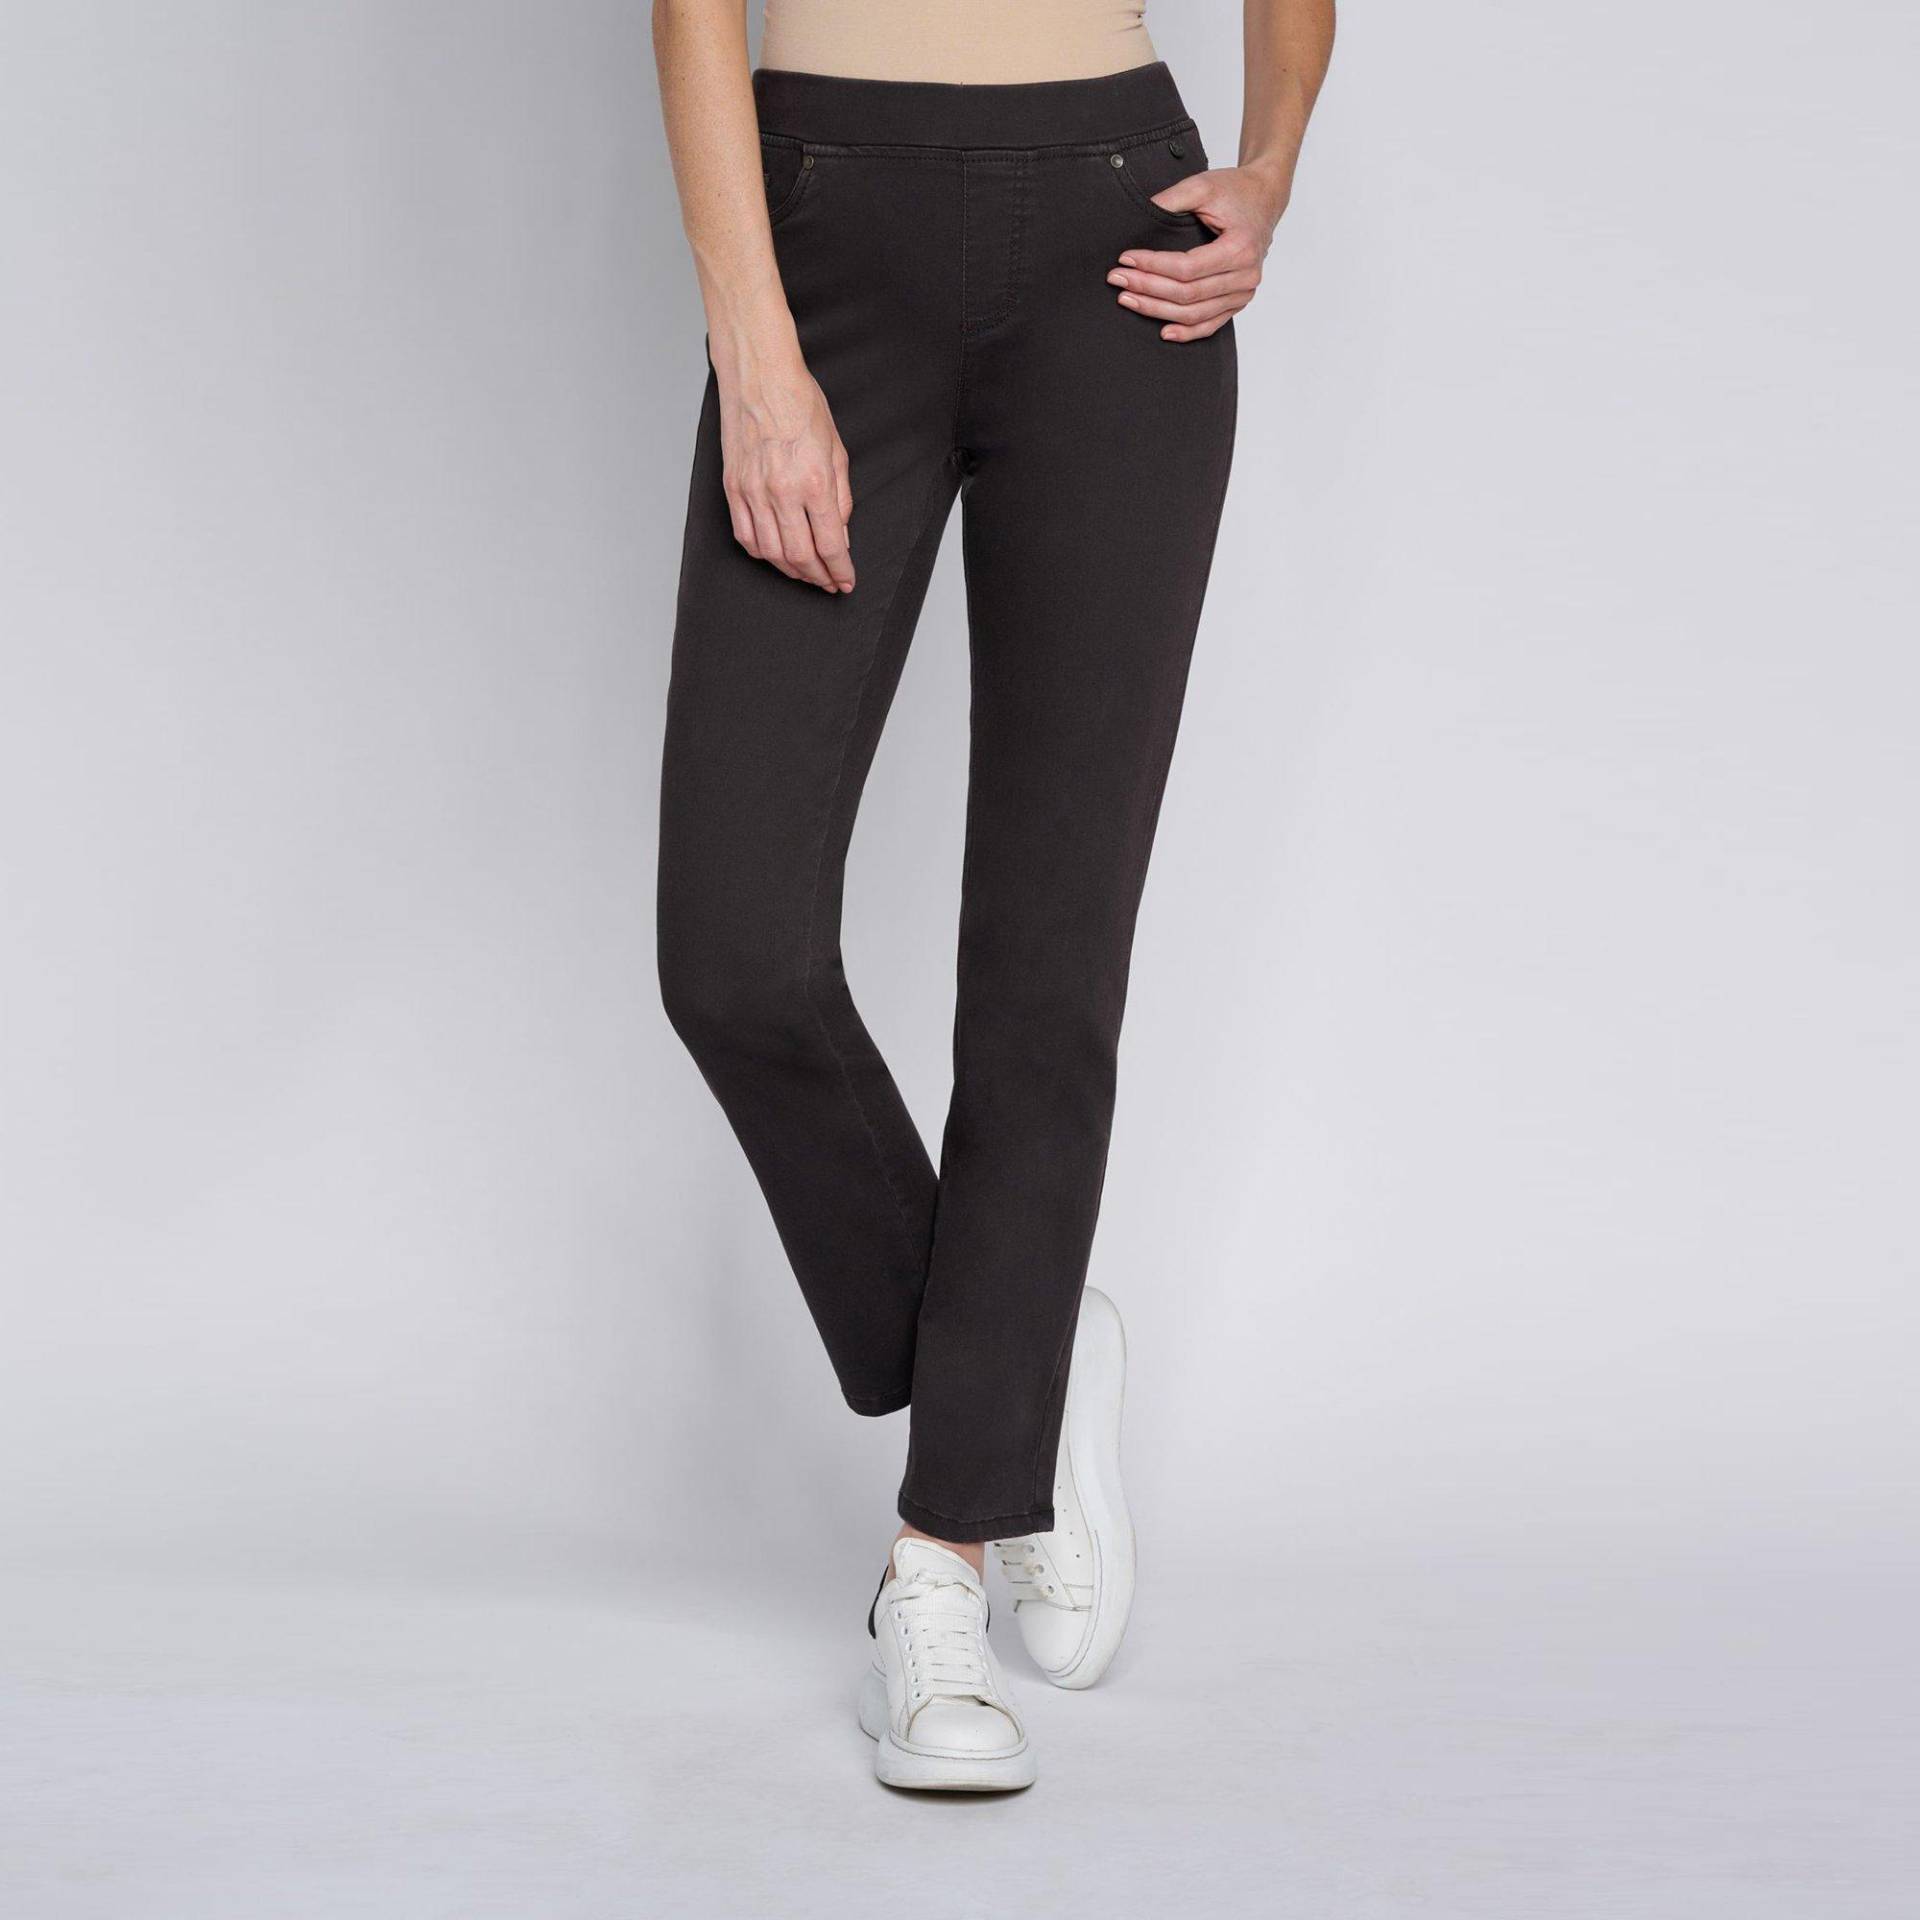 Jeans, Slim Fit Damen Black 38 von ANNA MONTANA